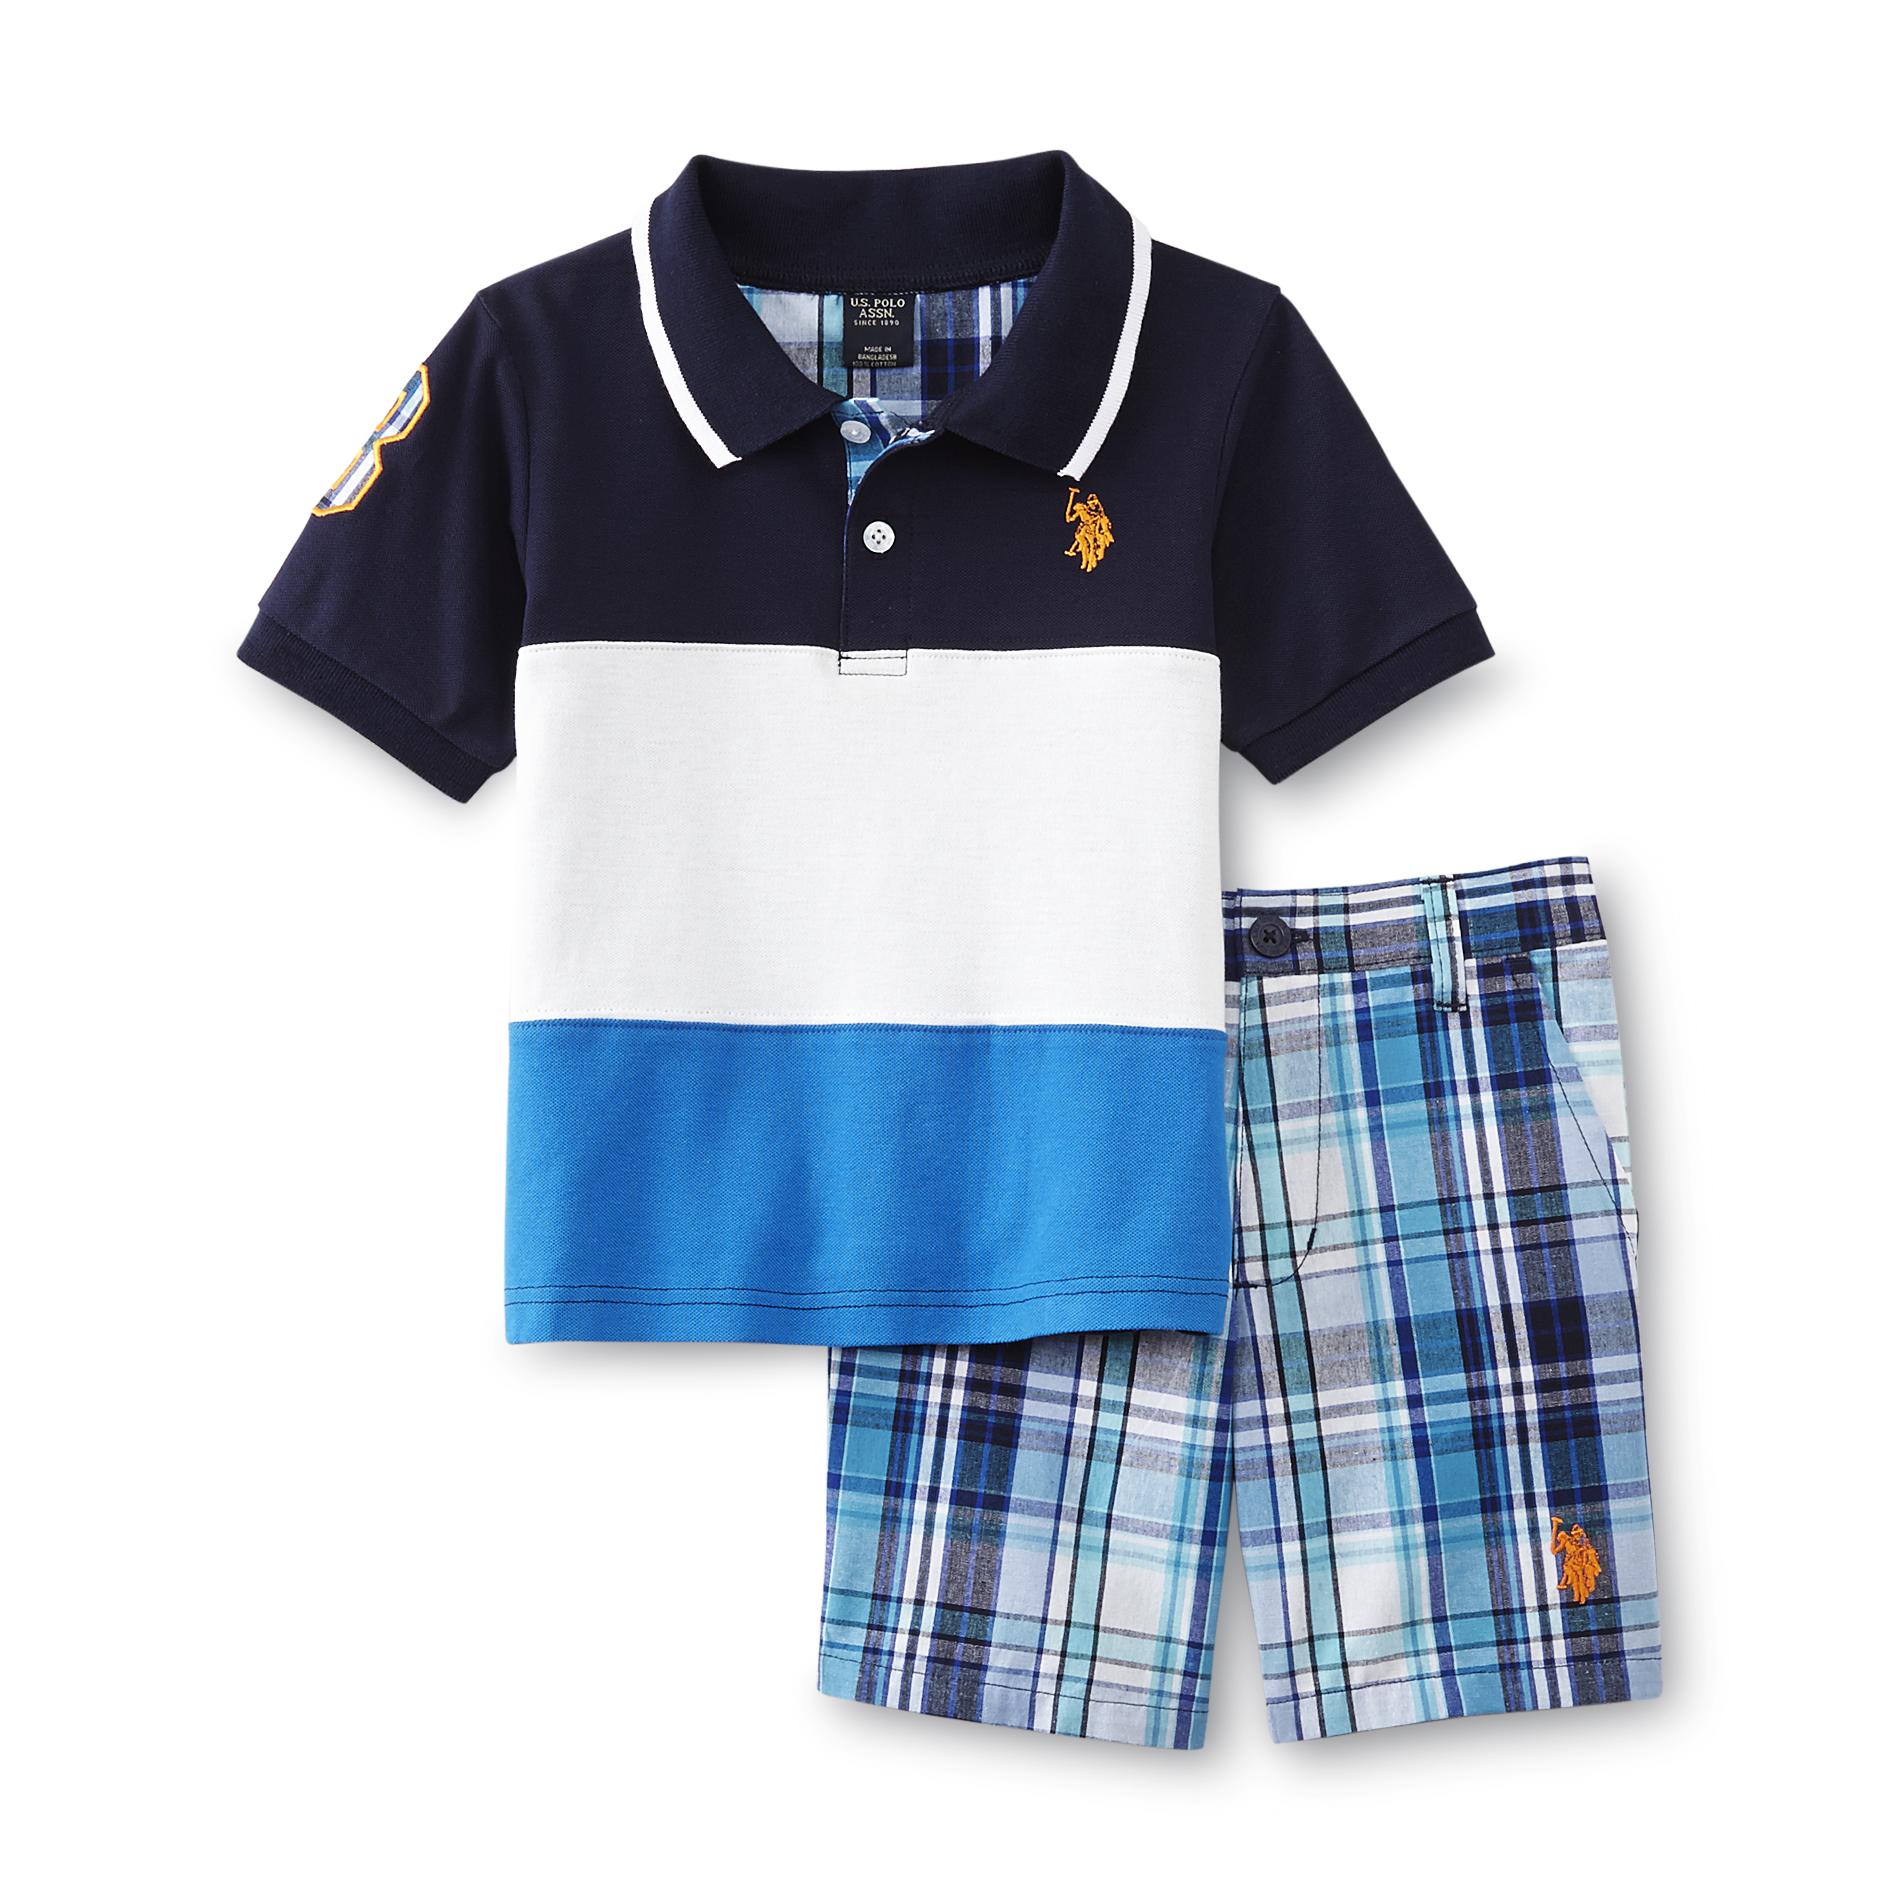 U.S. Polo Assn. Infant & Toddler Boy's Polo Shirt & Shorts